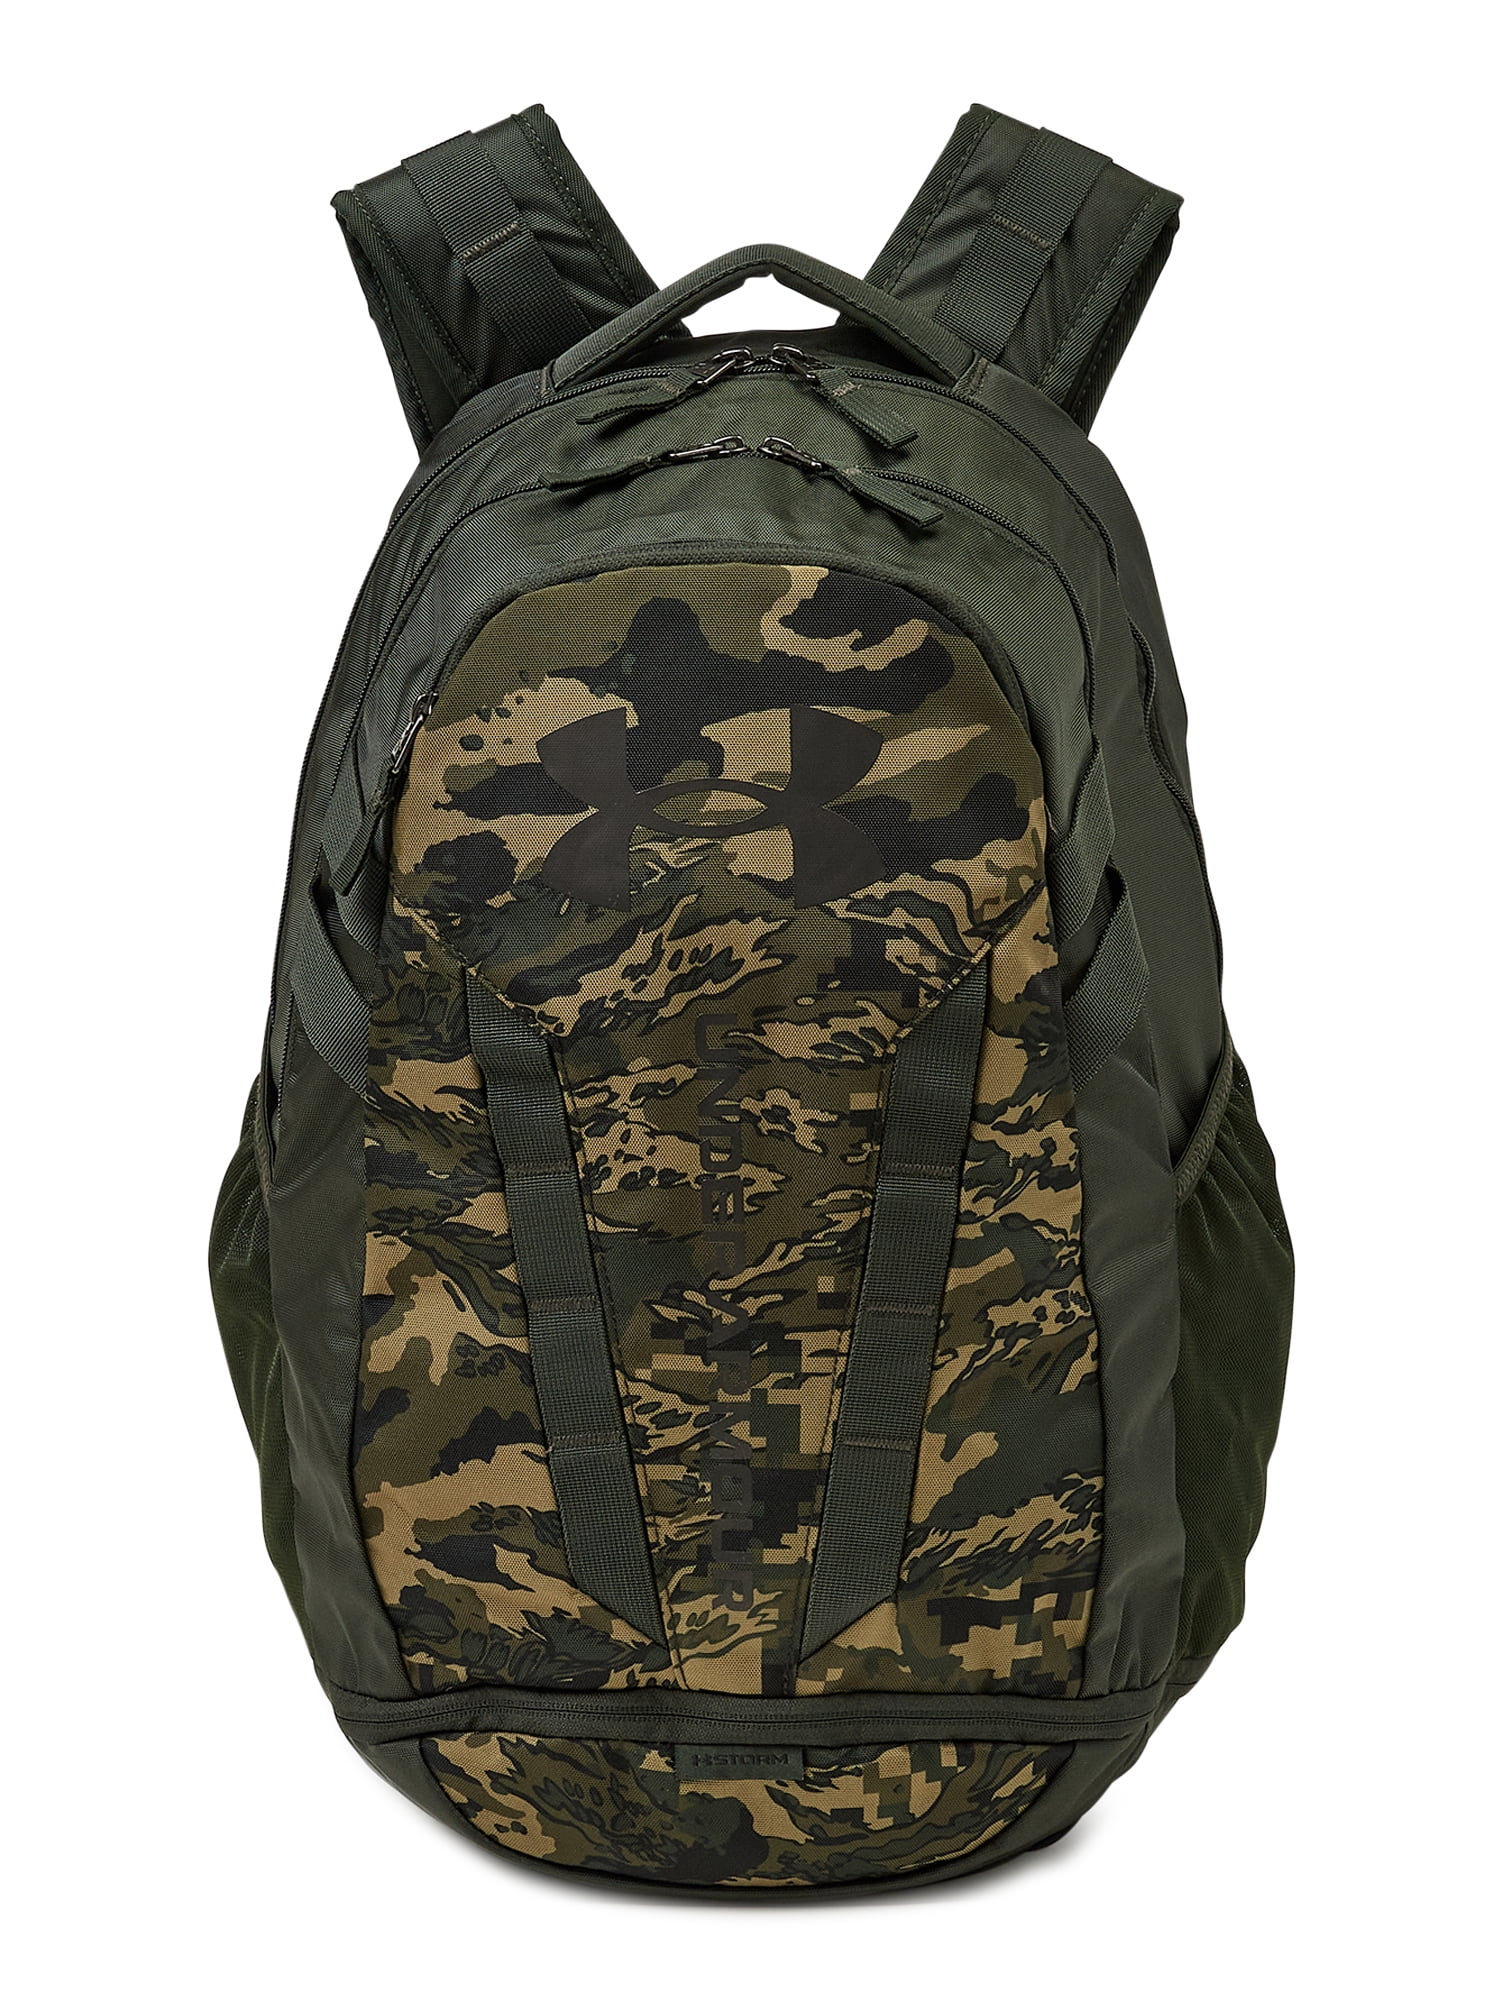 Under Armour Hustle 4.0 Unisex Adult Backpack Black Hushed Green 